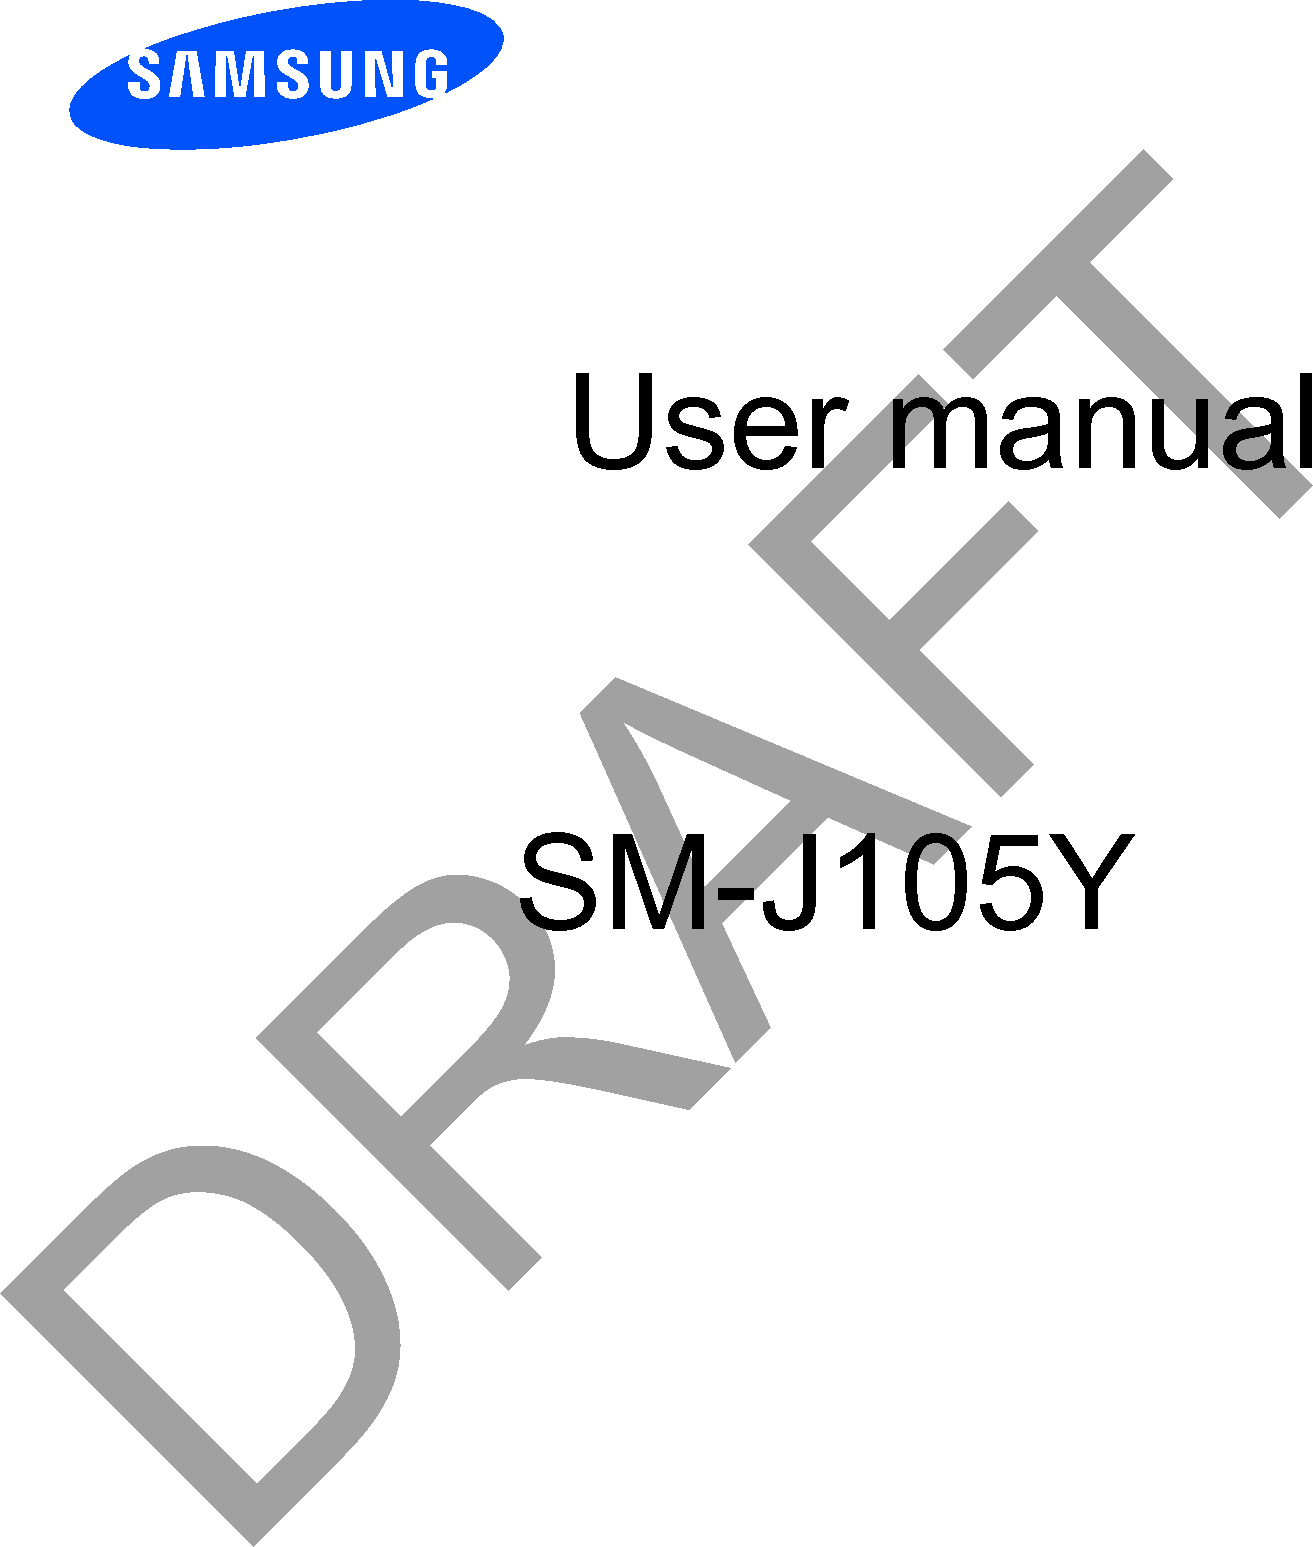 User manualSM-J105YDRAFT